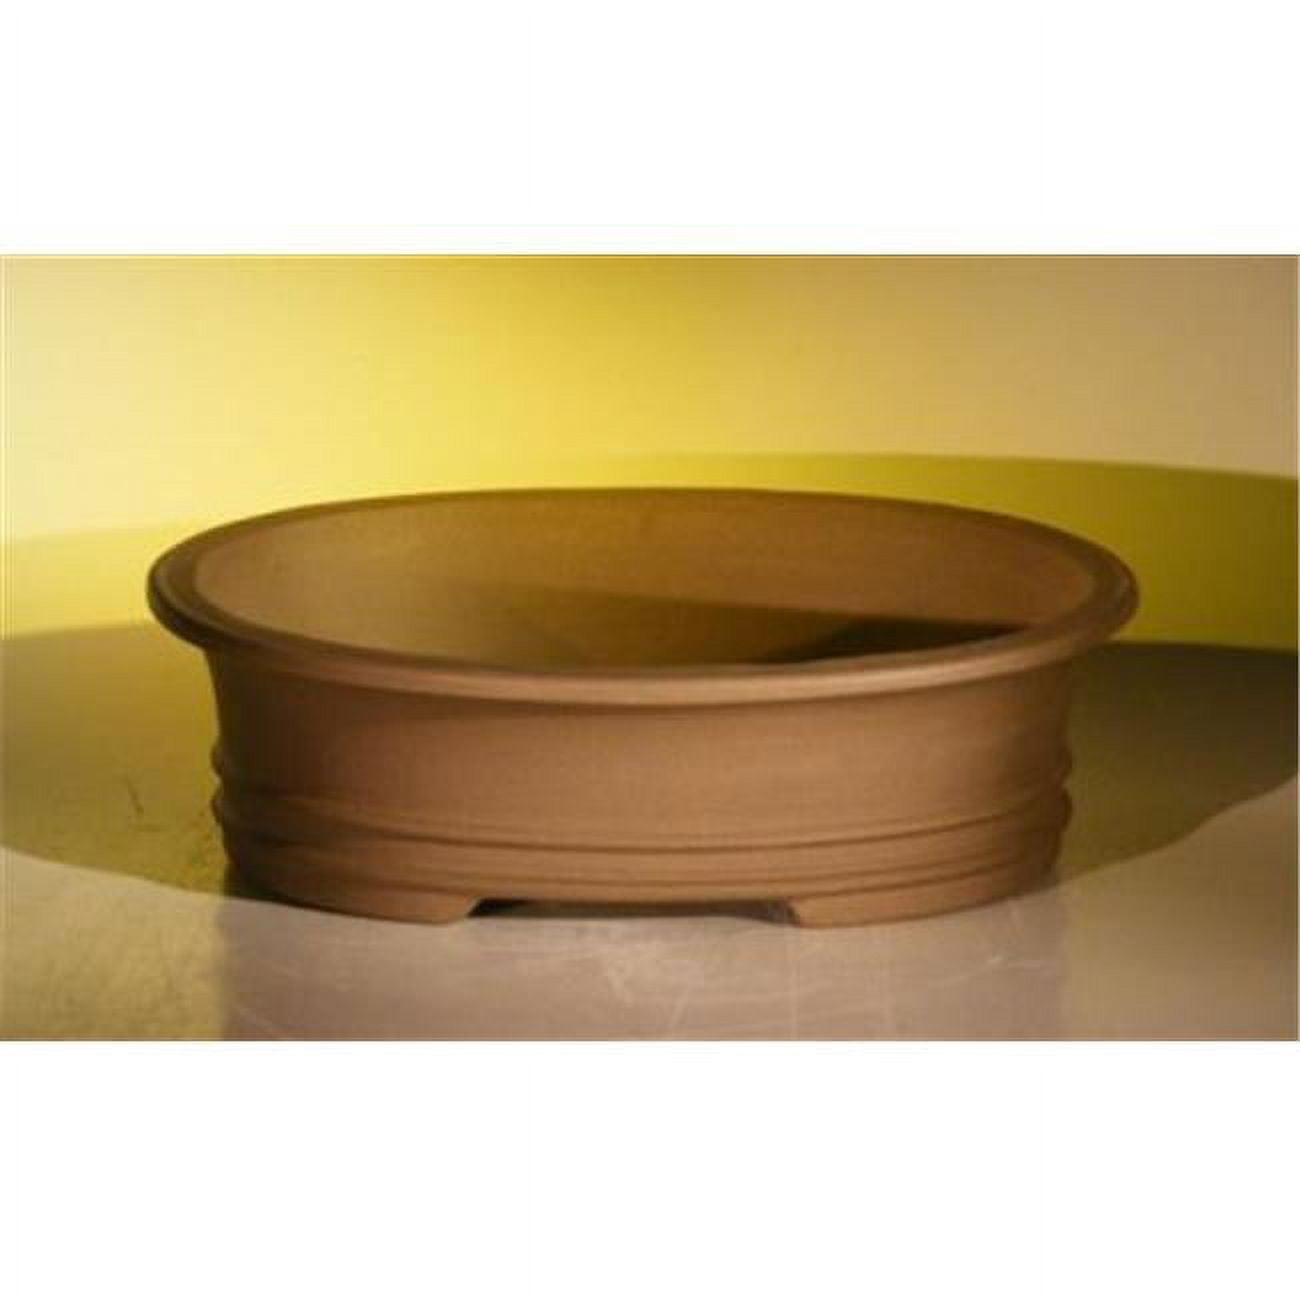 Bonsai Boy L296 Unglazed Ceramic Bonsai Pot, Tan - Oval